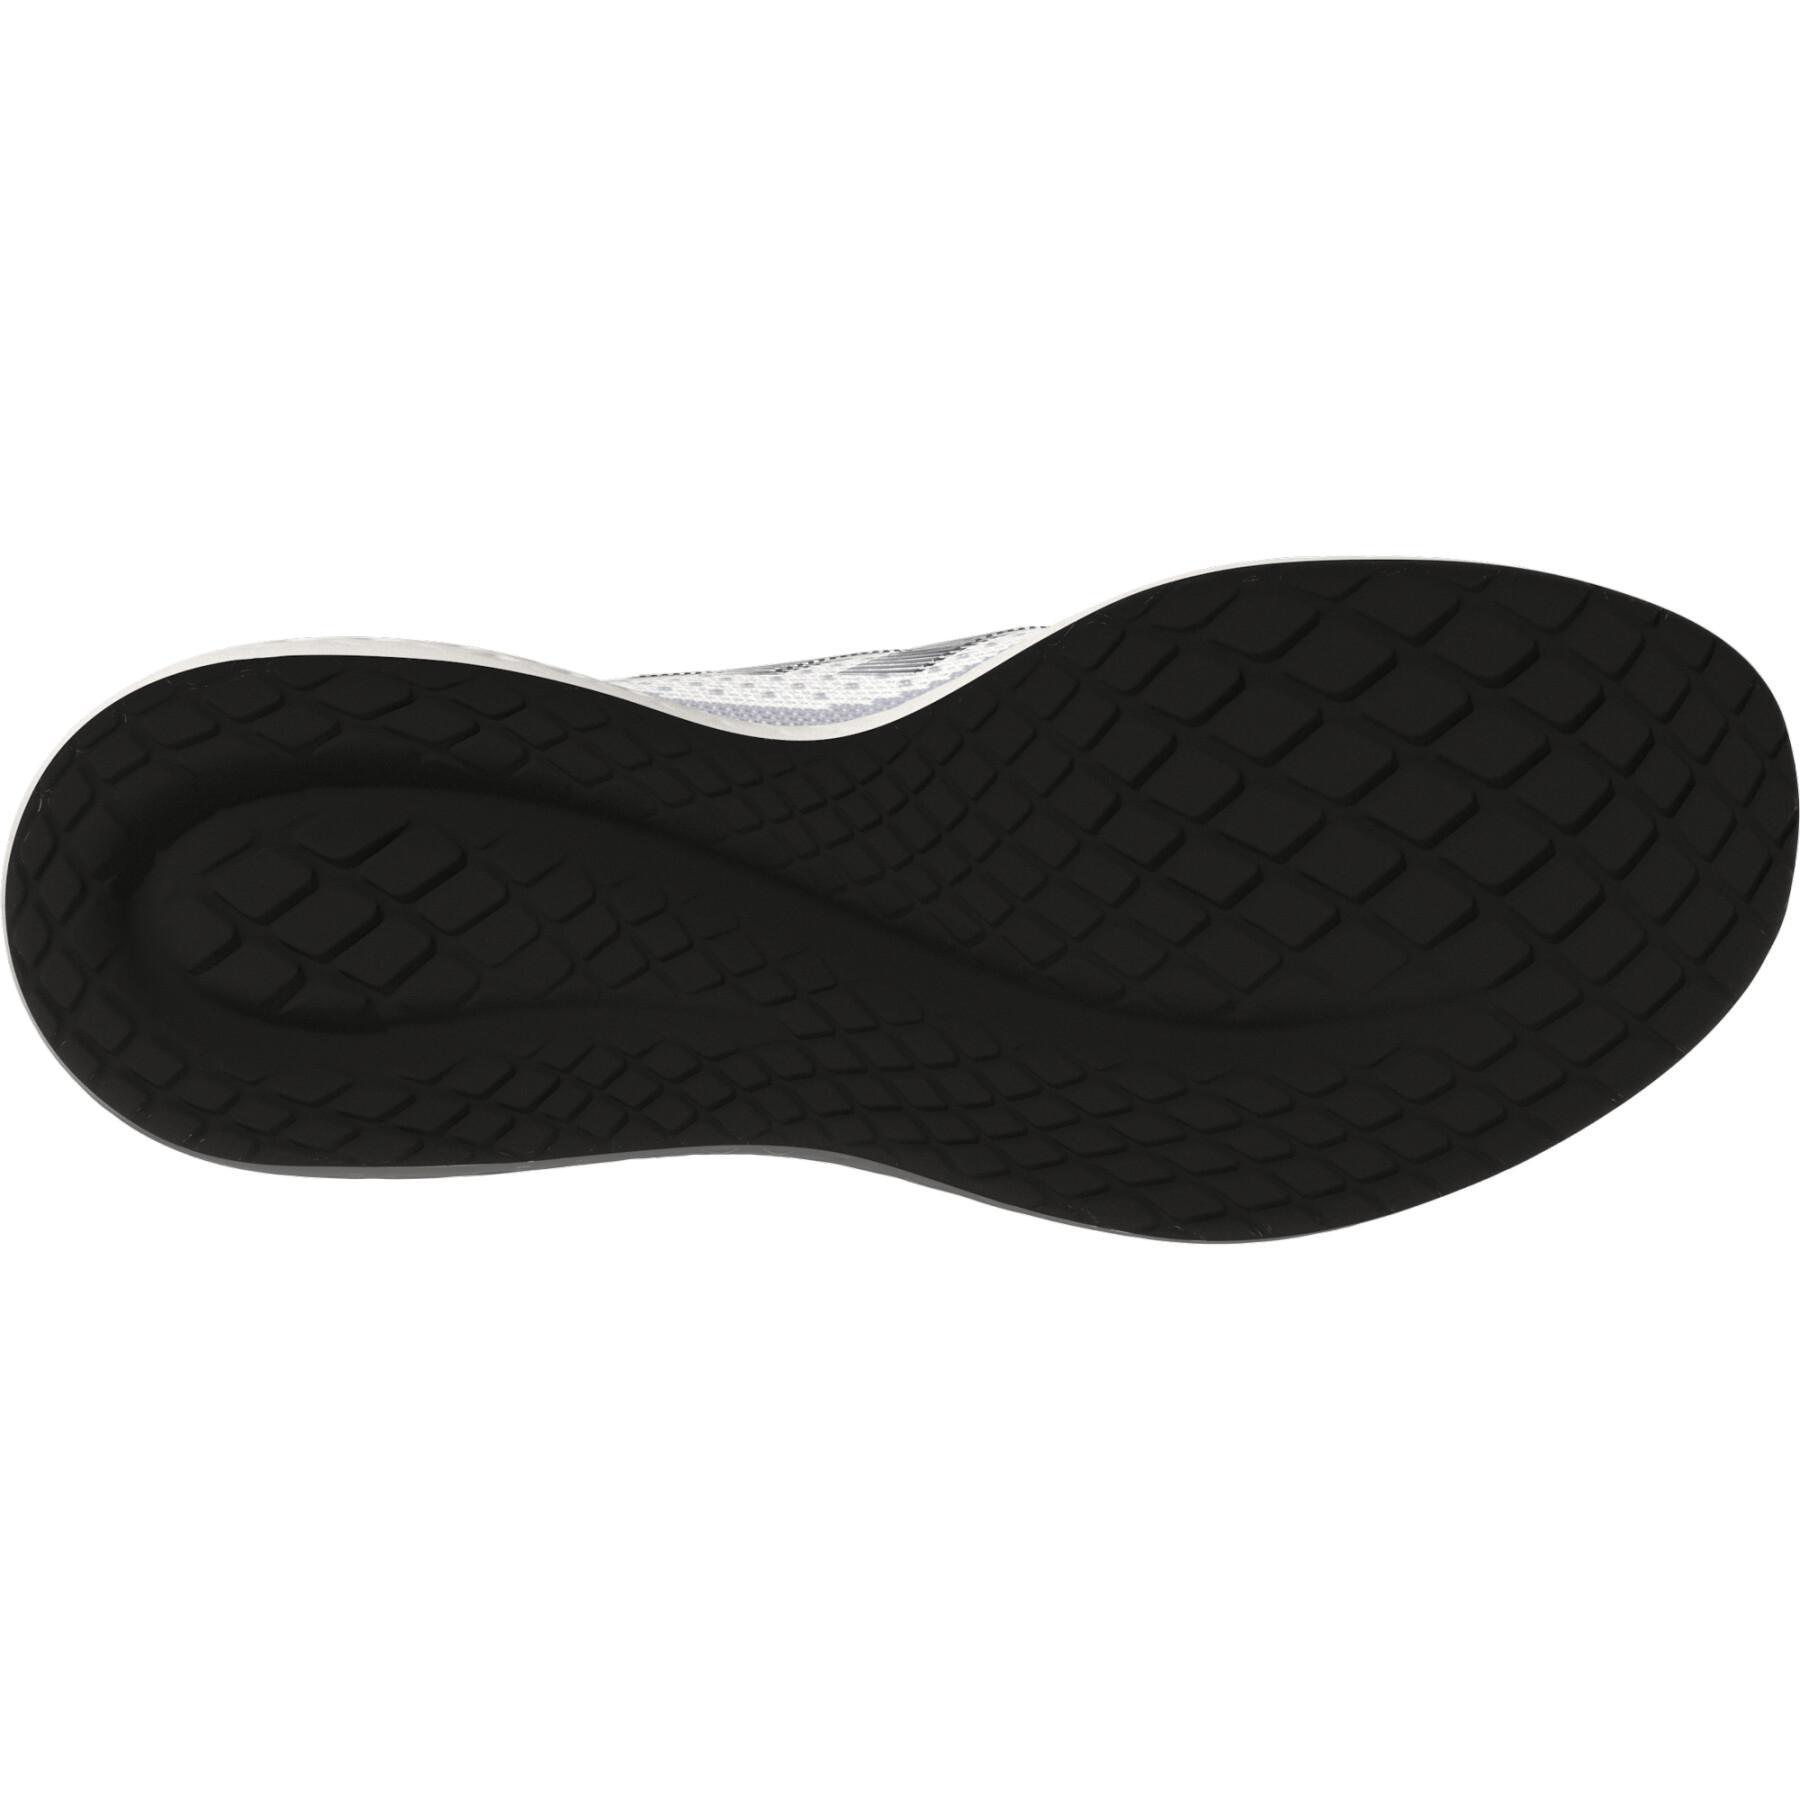 Zapatillas para correr adidas Fluid flow 2.0